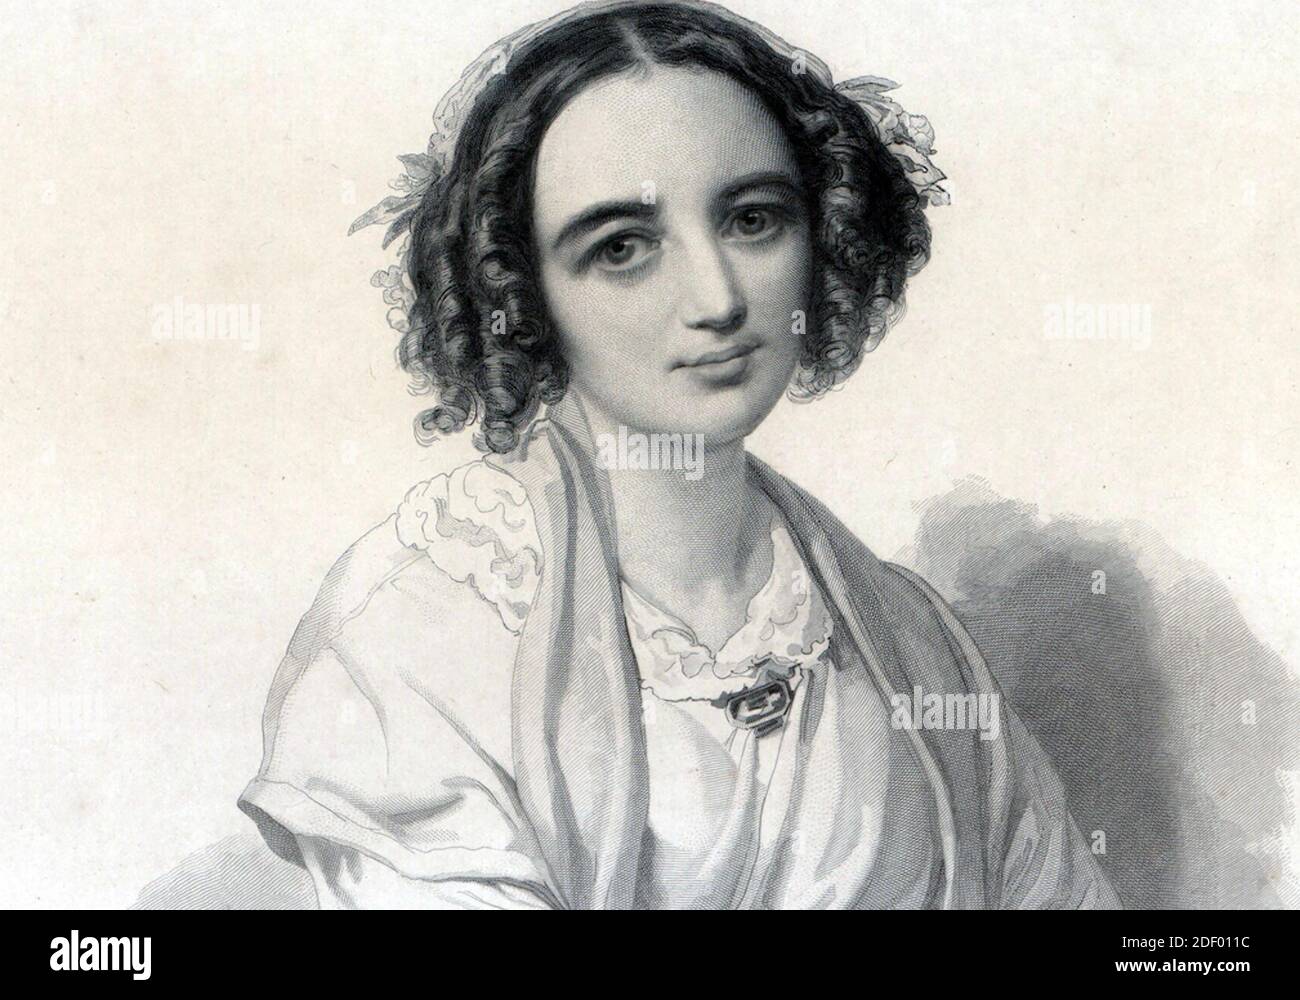 FANNY MENDELSSOHN (1805-1847) deutsche Komponistin und Pianistin, Schwester des bekannteren Felix Mendelssohn und nach ihrer Heirat Fanny Hensel genannt. Skizze über 1830. Stockfoto